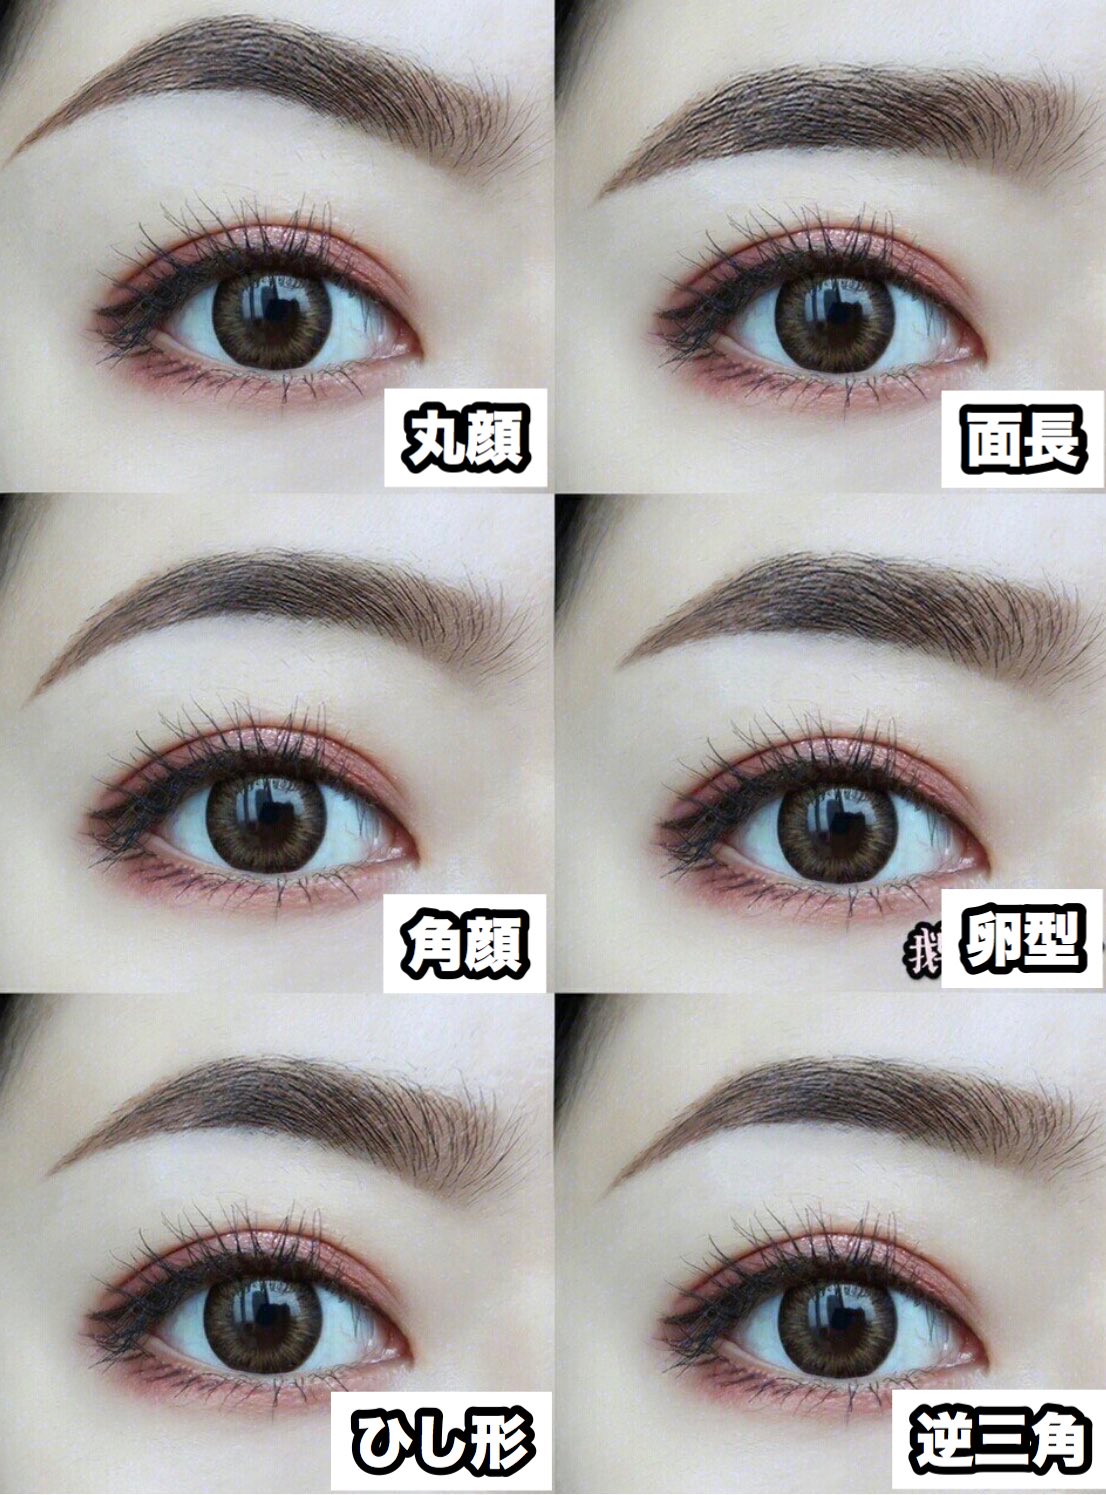 紅美女 眉毛の基本位置と 書き方 中国ではしっかり 濃い眉毛がトレンドです また 基本の書き方 だけでなく 自分に合った眉毛を作る ということをとても意識してます 眉頭は上向きに 眉尻は下向きに毛の流れを整え 自分の顔に合った